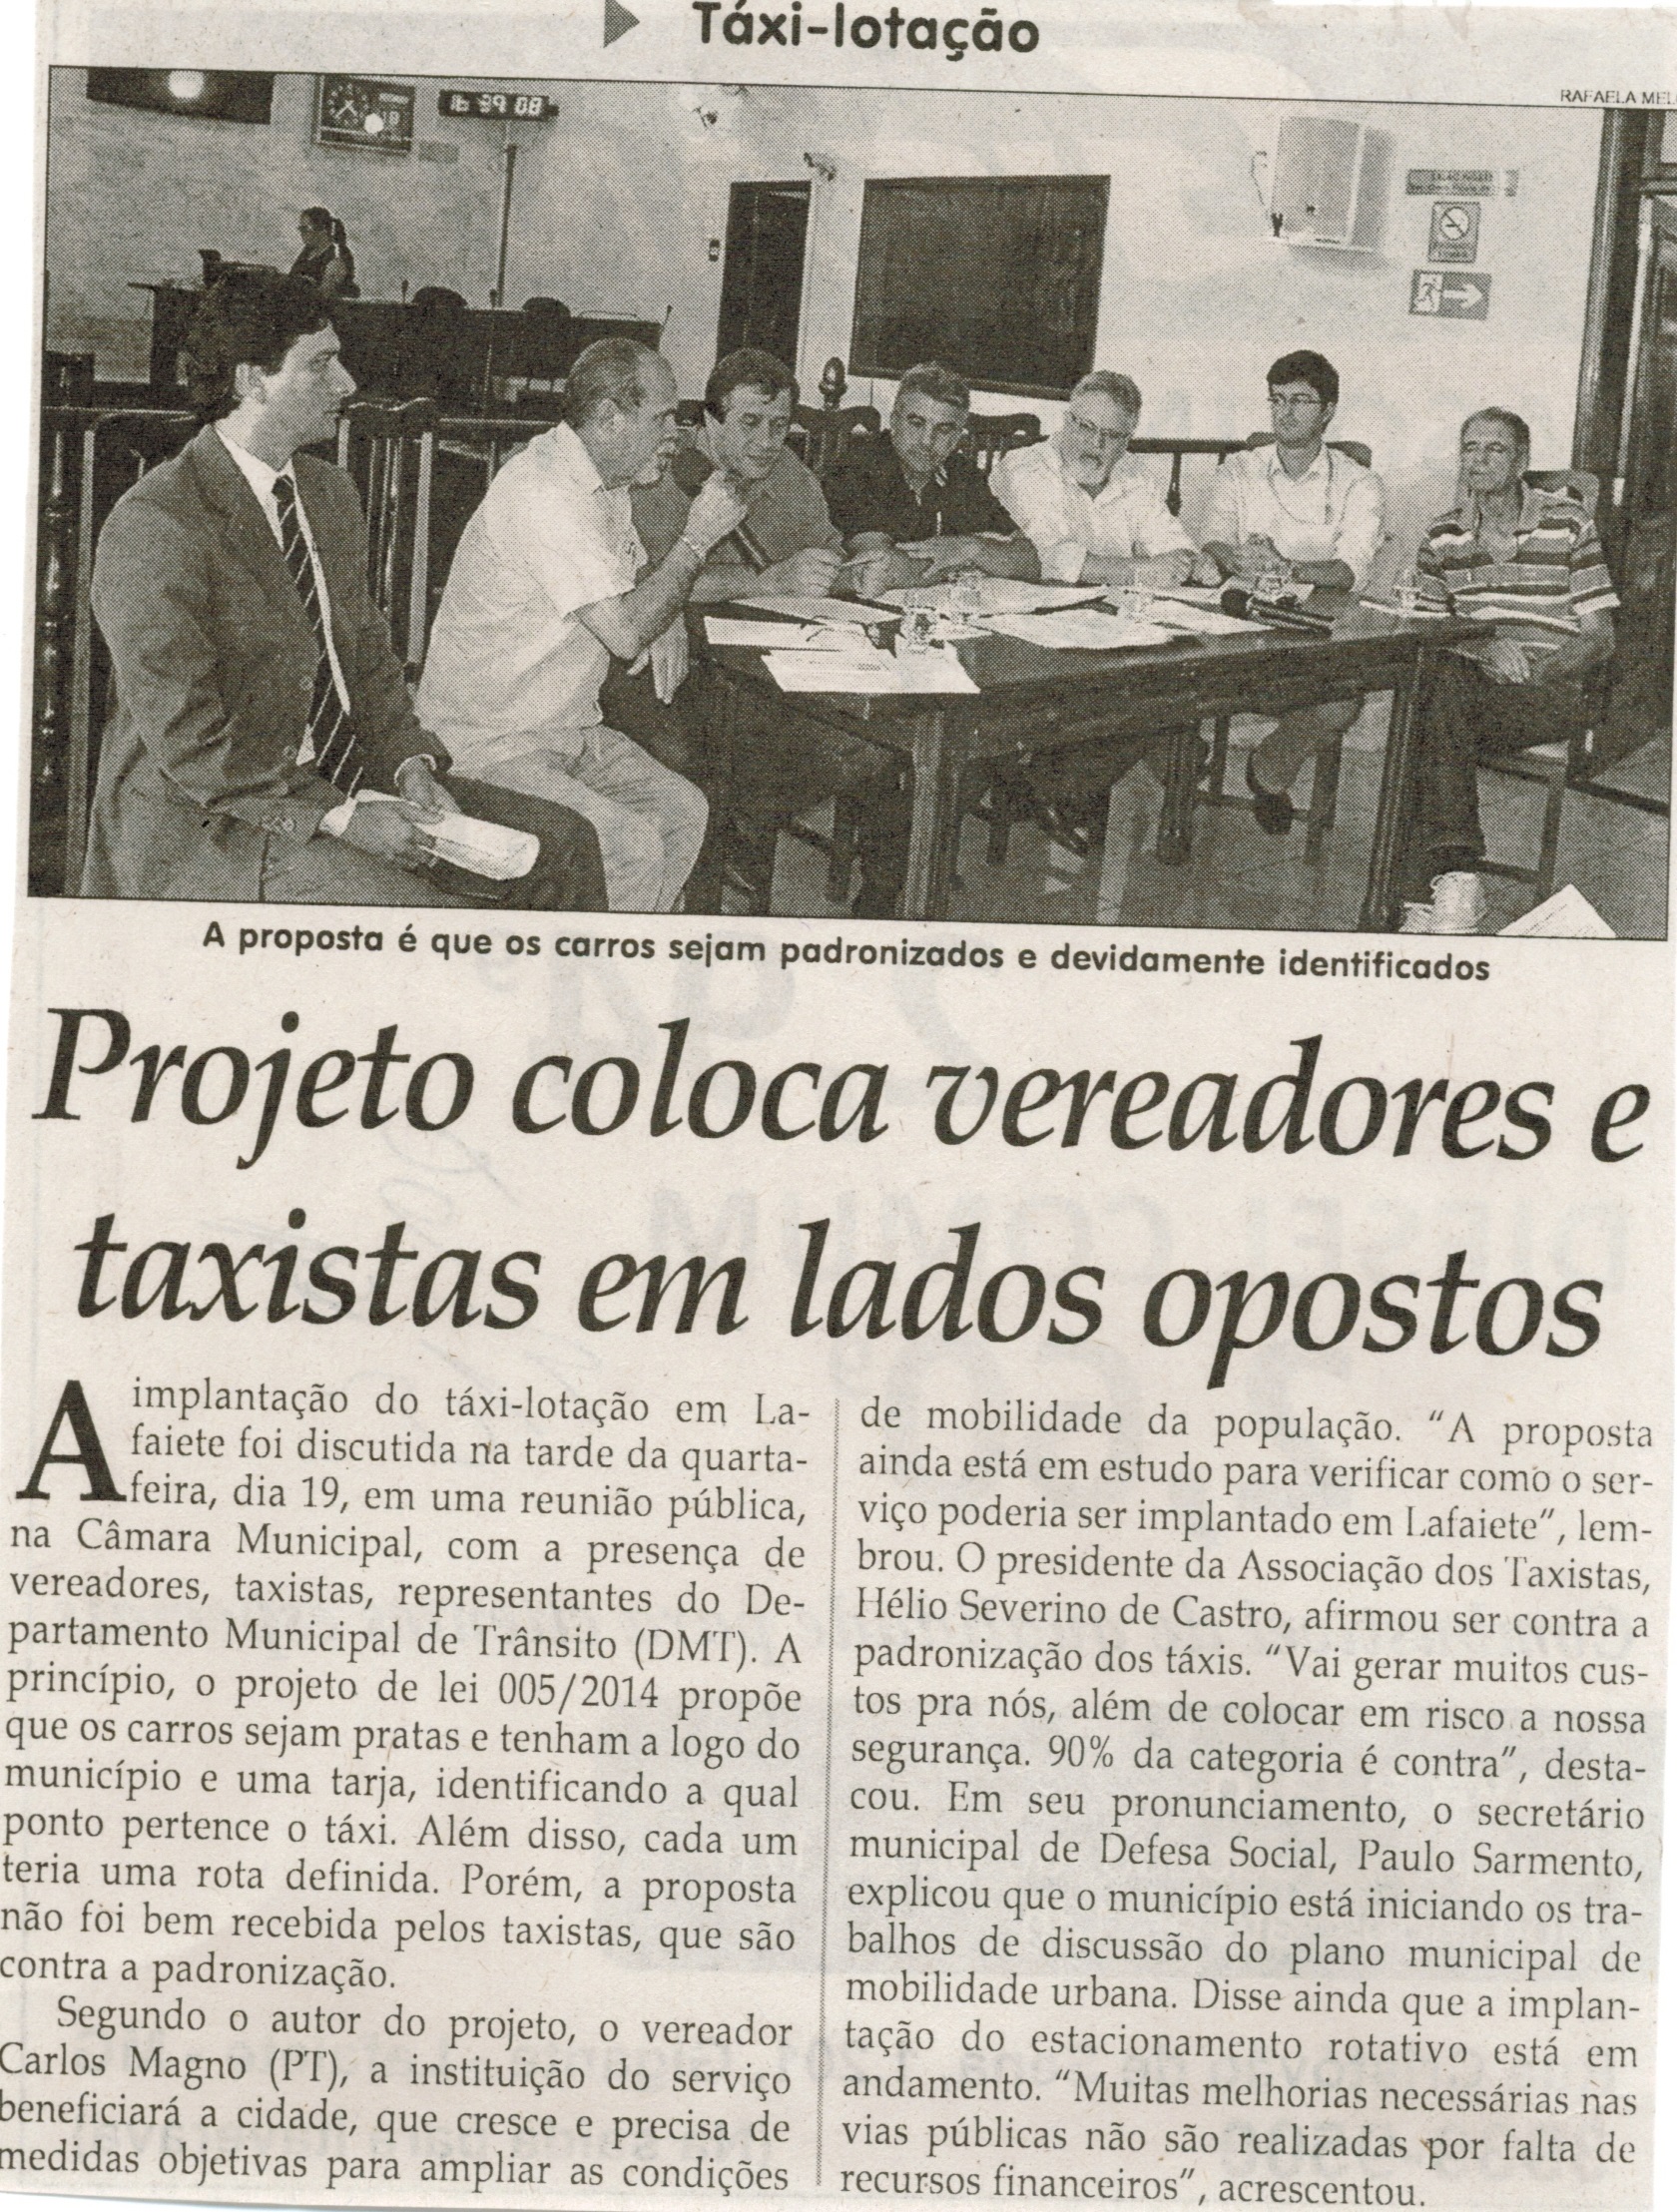 Projeto coloca vereadores e taxistas em lado opostos. Jornal Correio da Cidade, Conselheiro Lafaiete, 28 nov. 2014, p. 4.